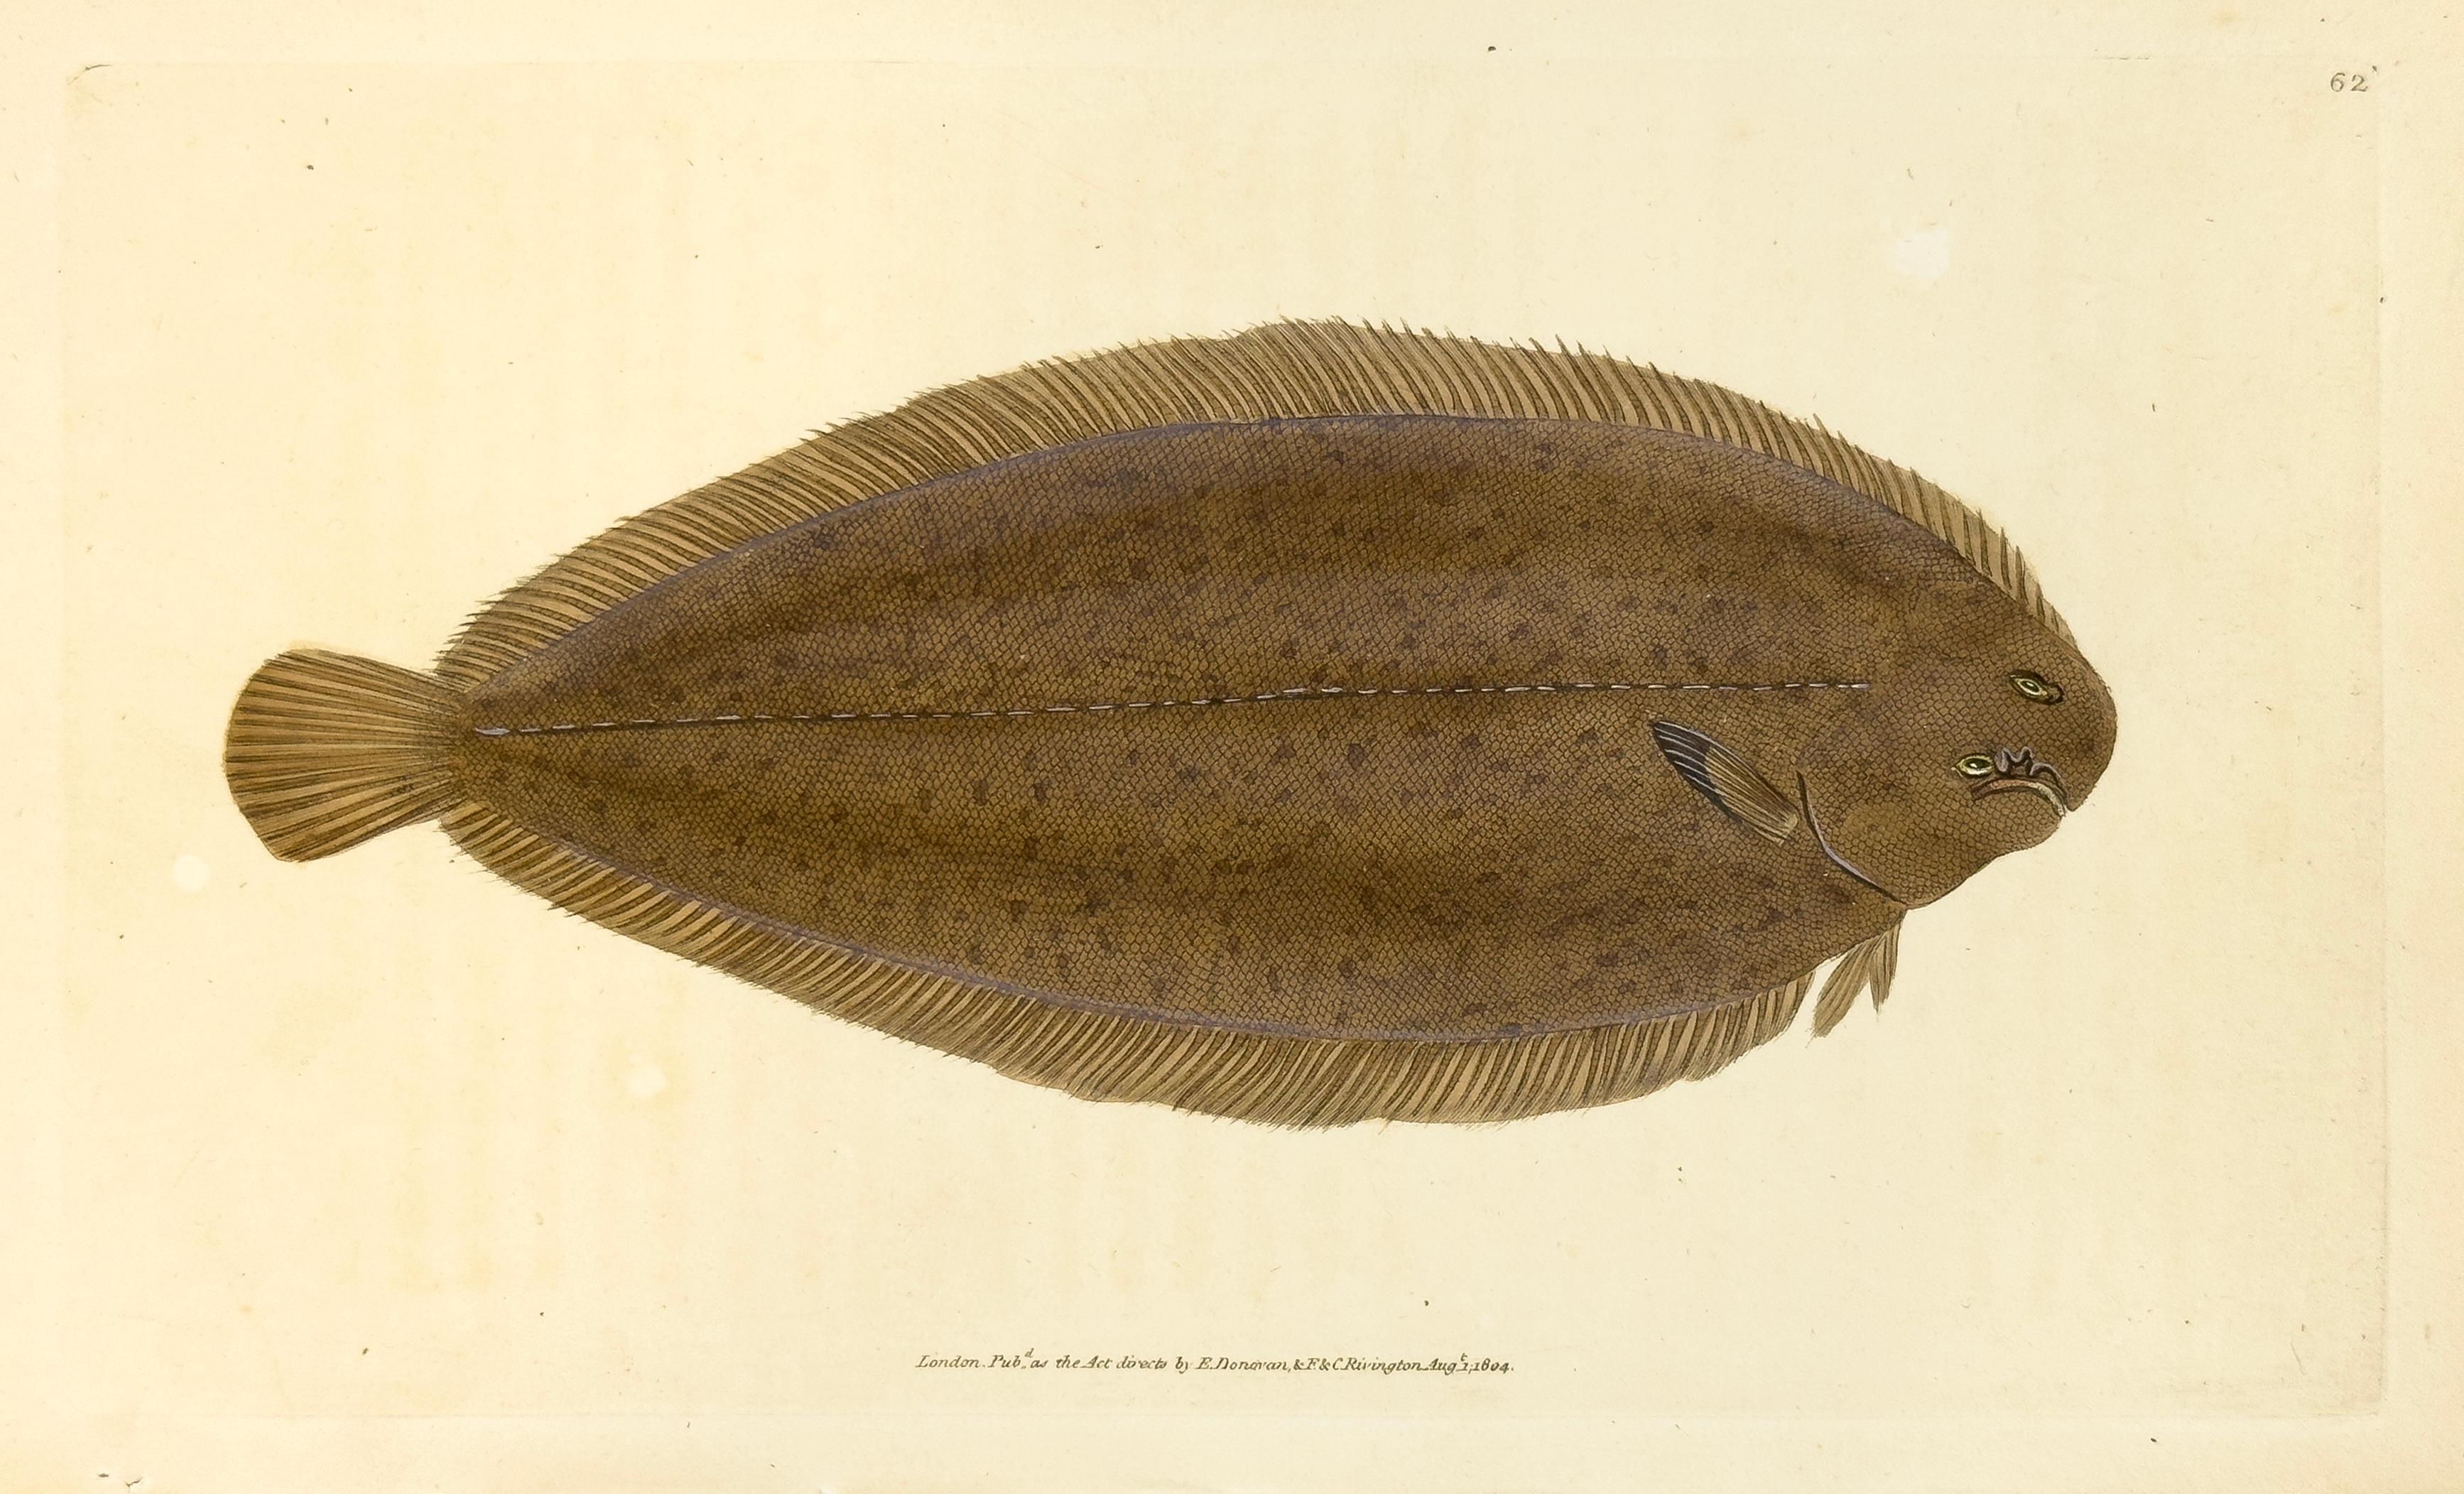 62: Pleuronectes solea, Seezunge